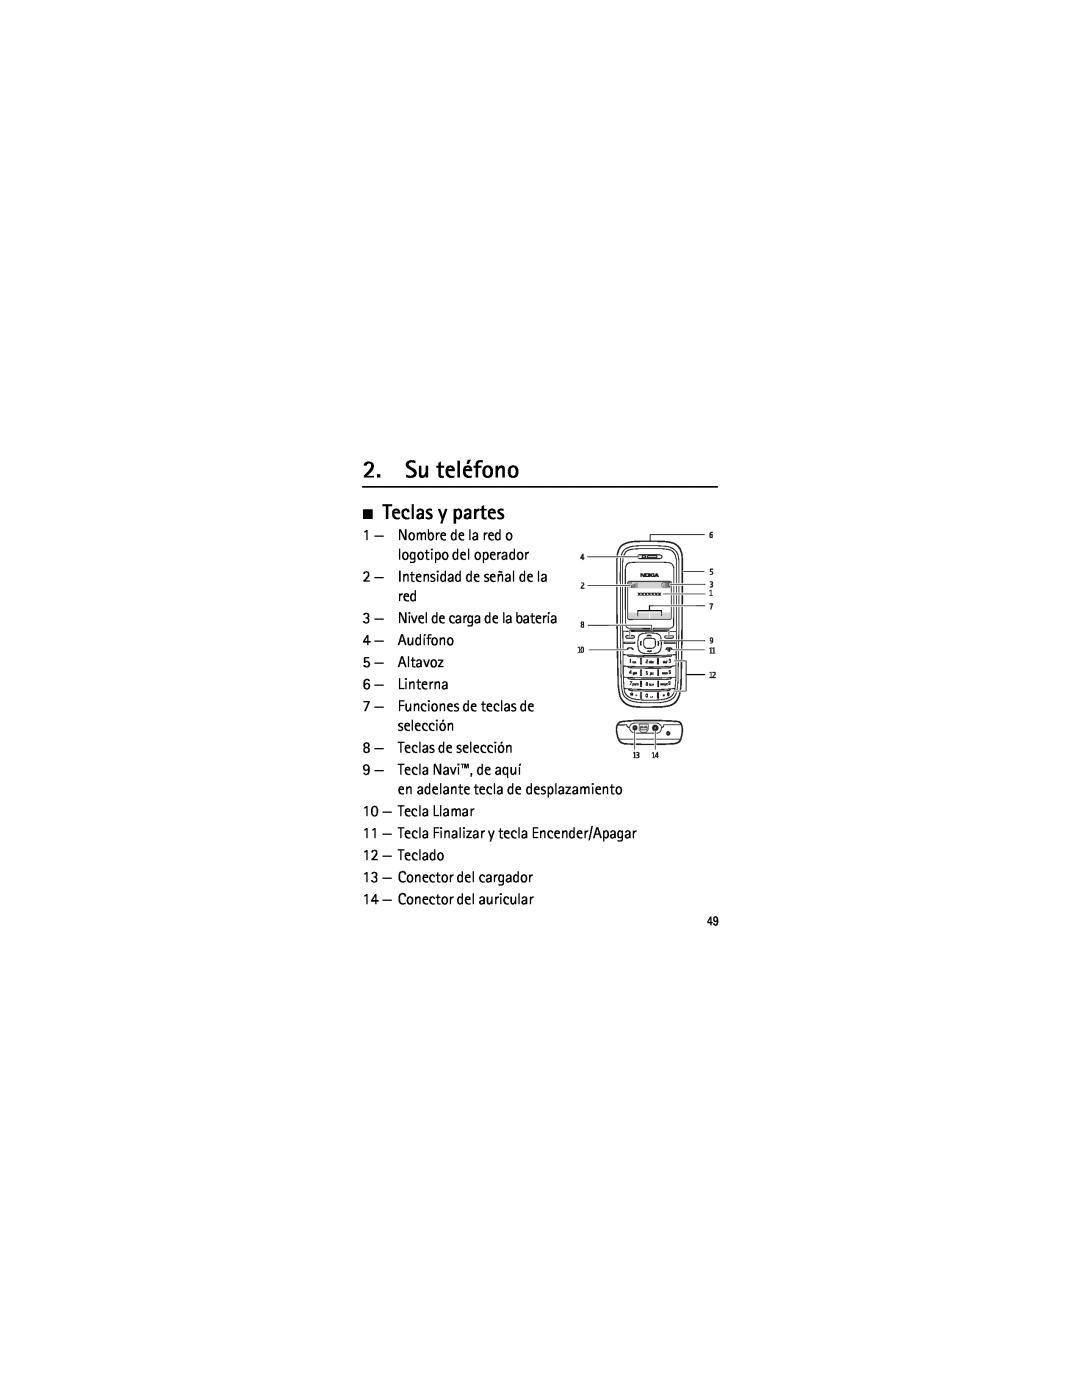 Nokia 1208 manual Su teléfono, Teclas y partes 